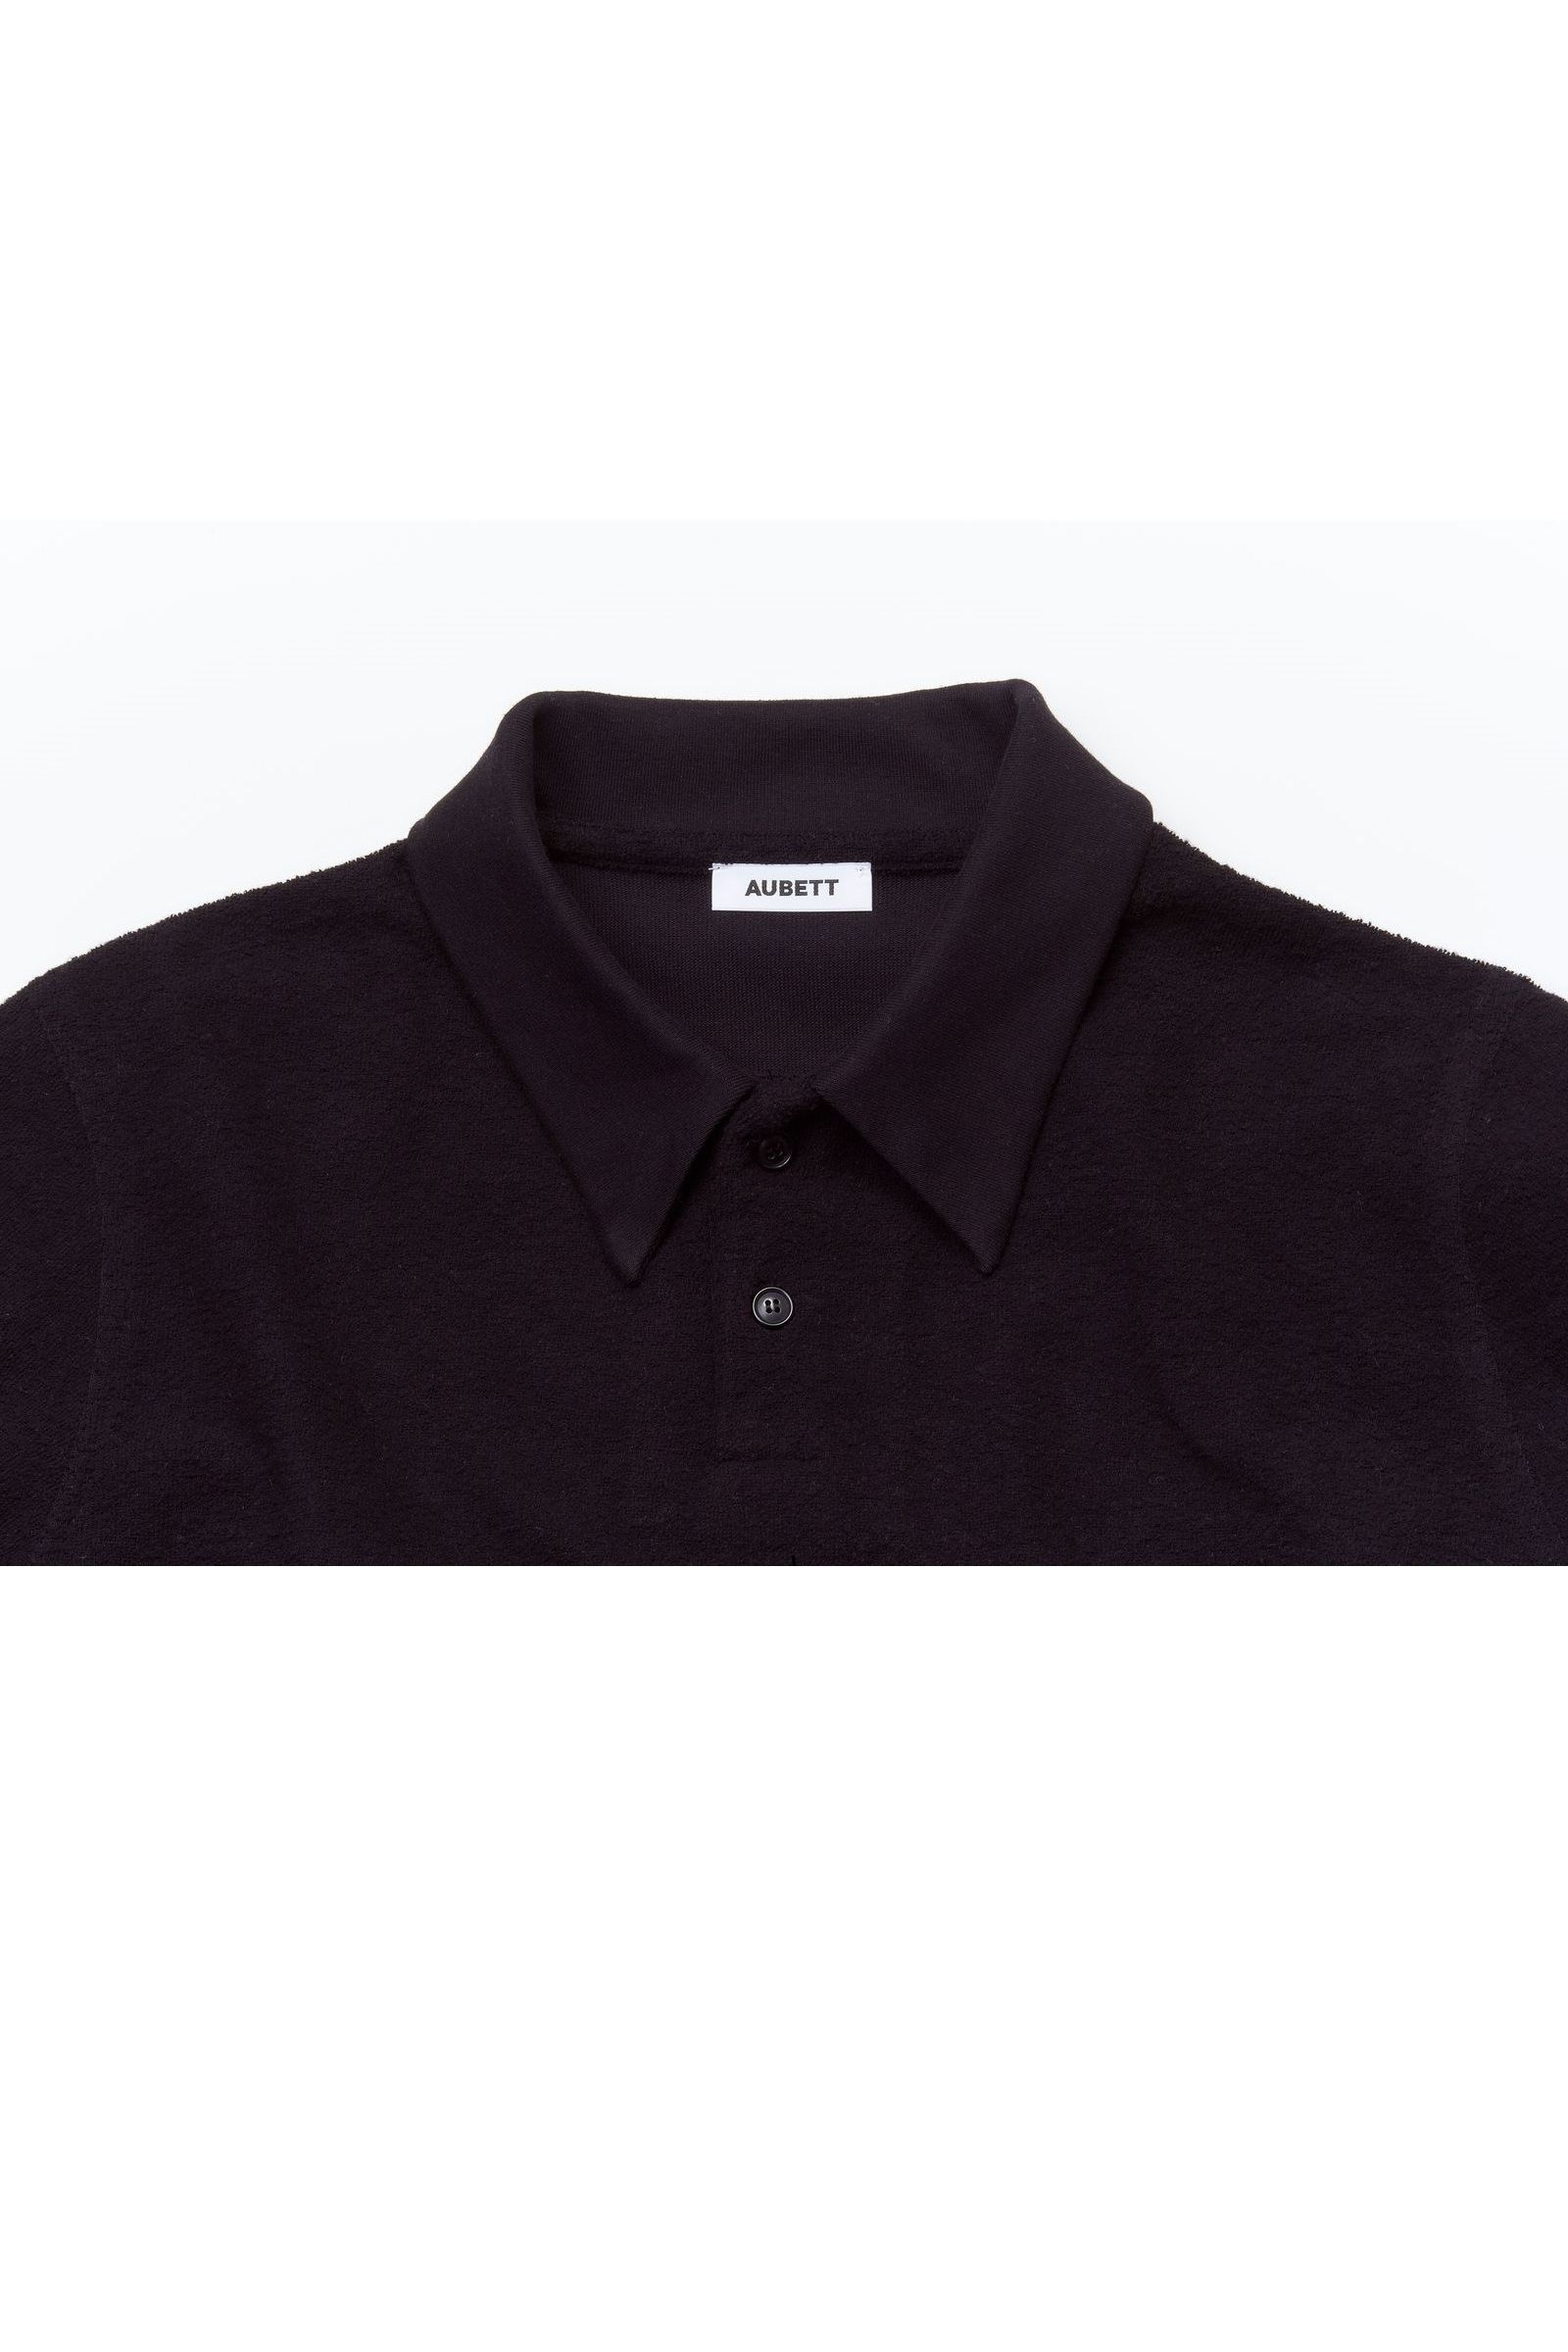 AUBETT / オーベット | 2021AW | brush pile polo shirt ブラッシュ パイル ポロ シャツ | M | Brown Black | メンズ